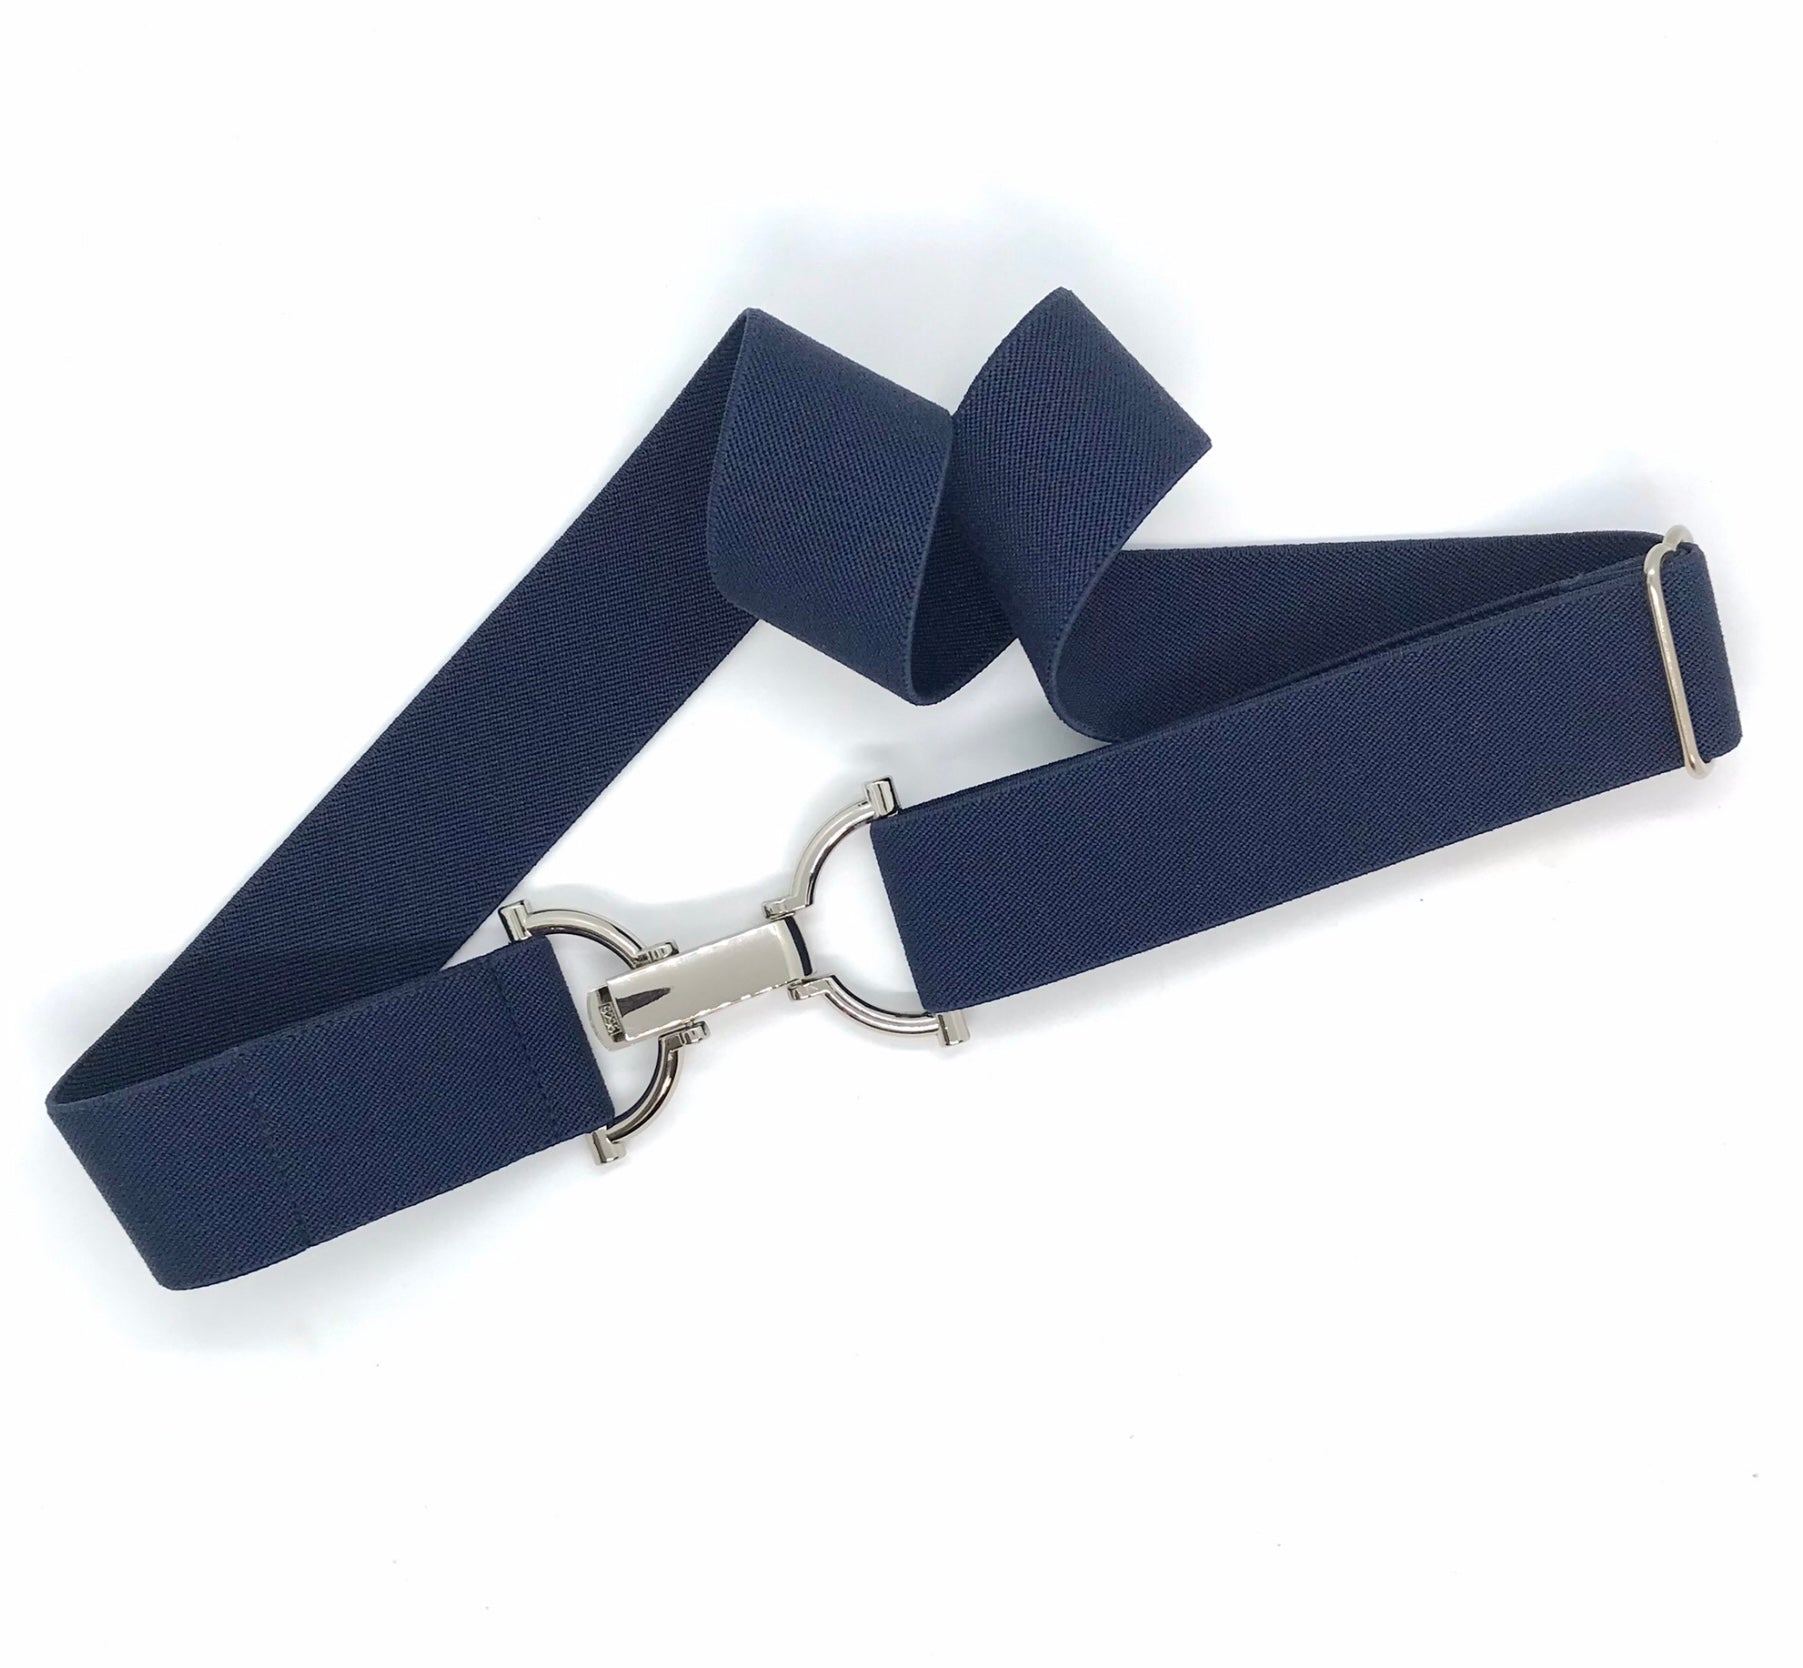 Bedford-Jones Belts-1.5”  w. D-ring clip